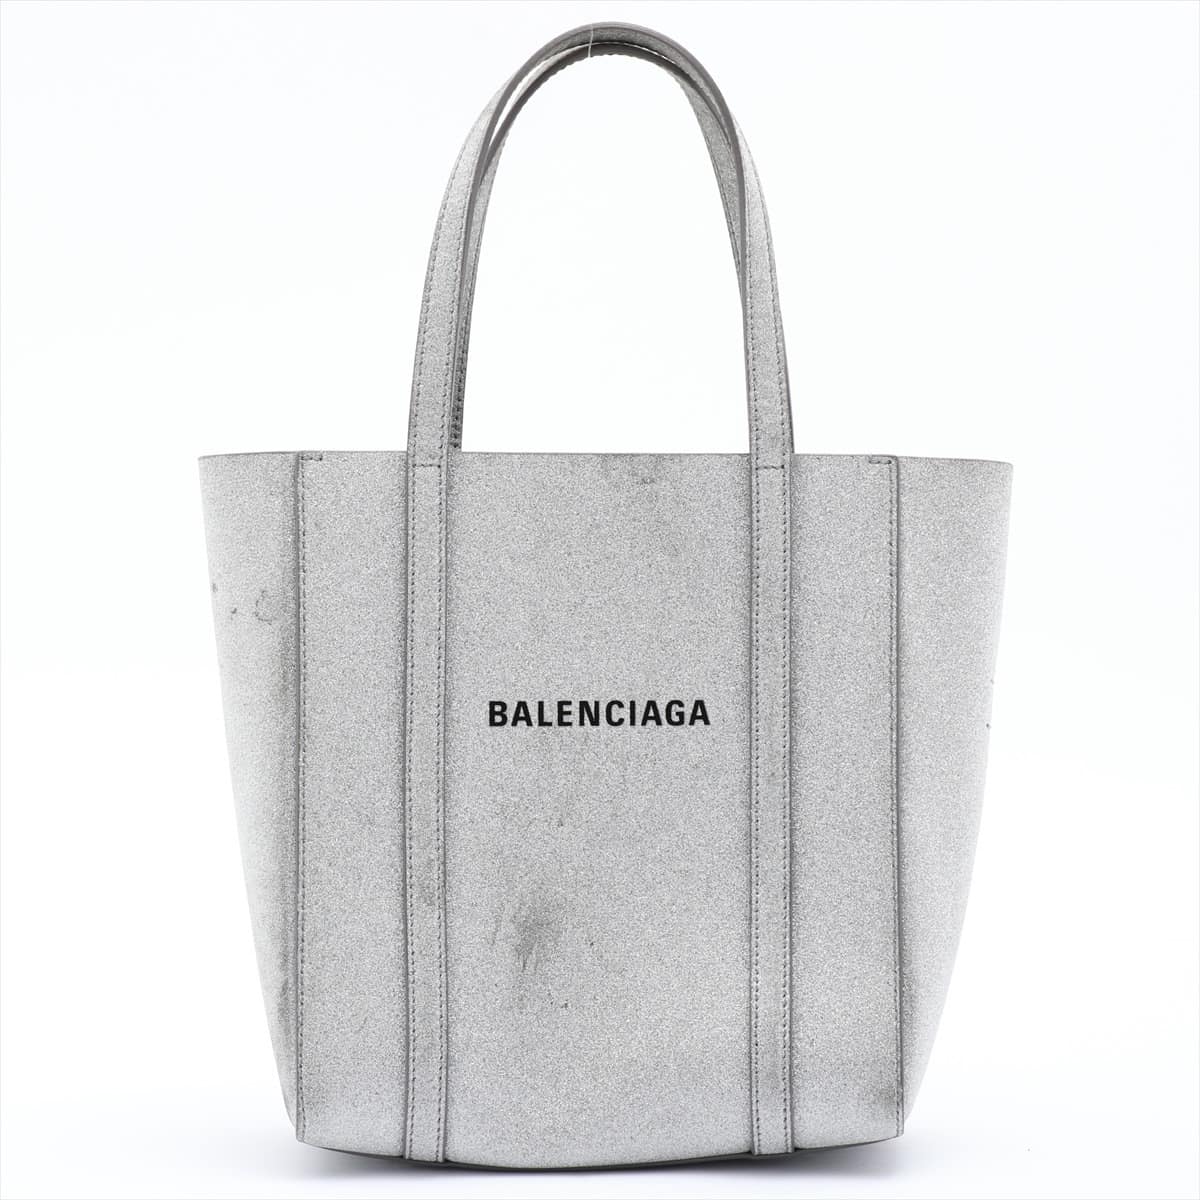 Balenciaga Everyday Tote XXS Leather 2way handbag Silver 551815